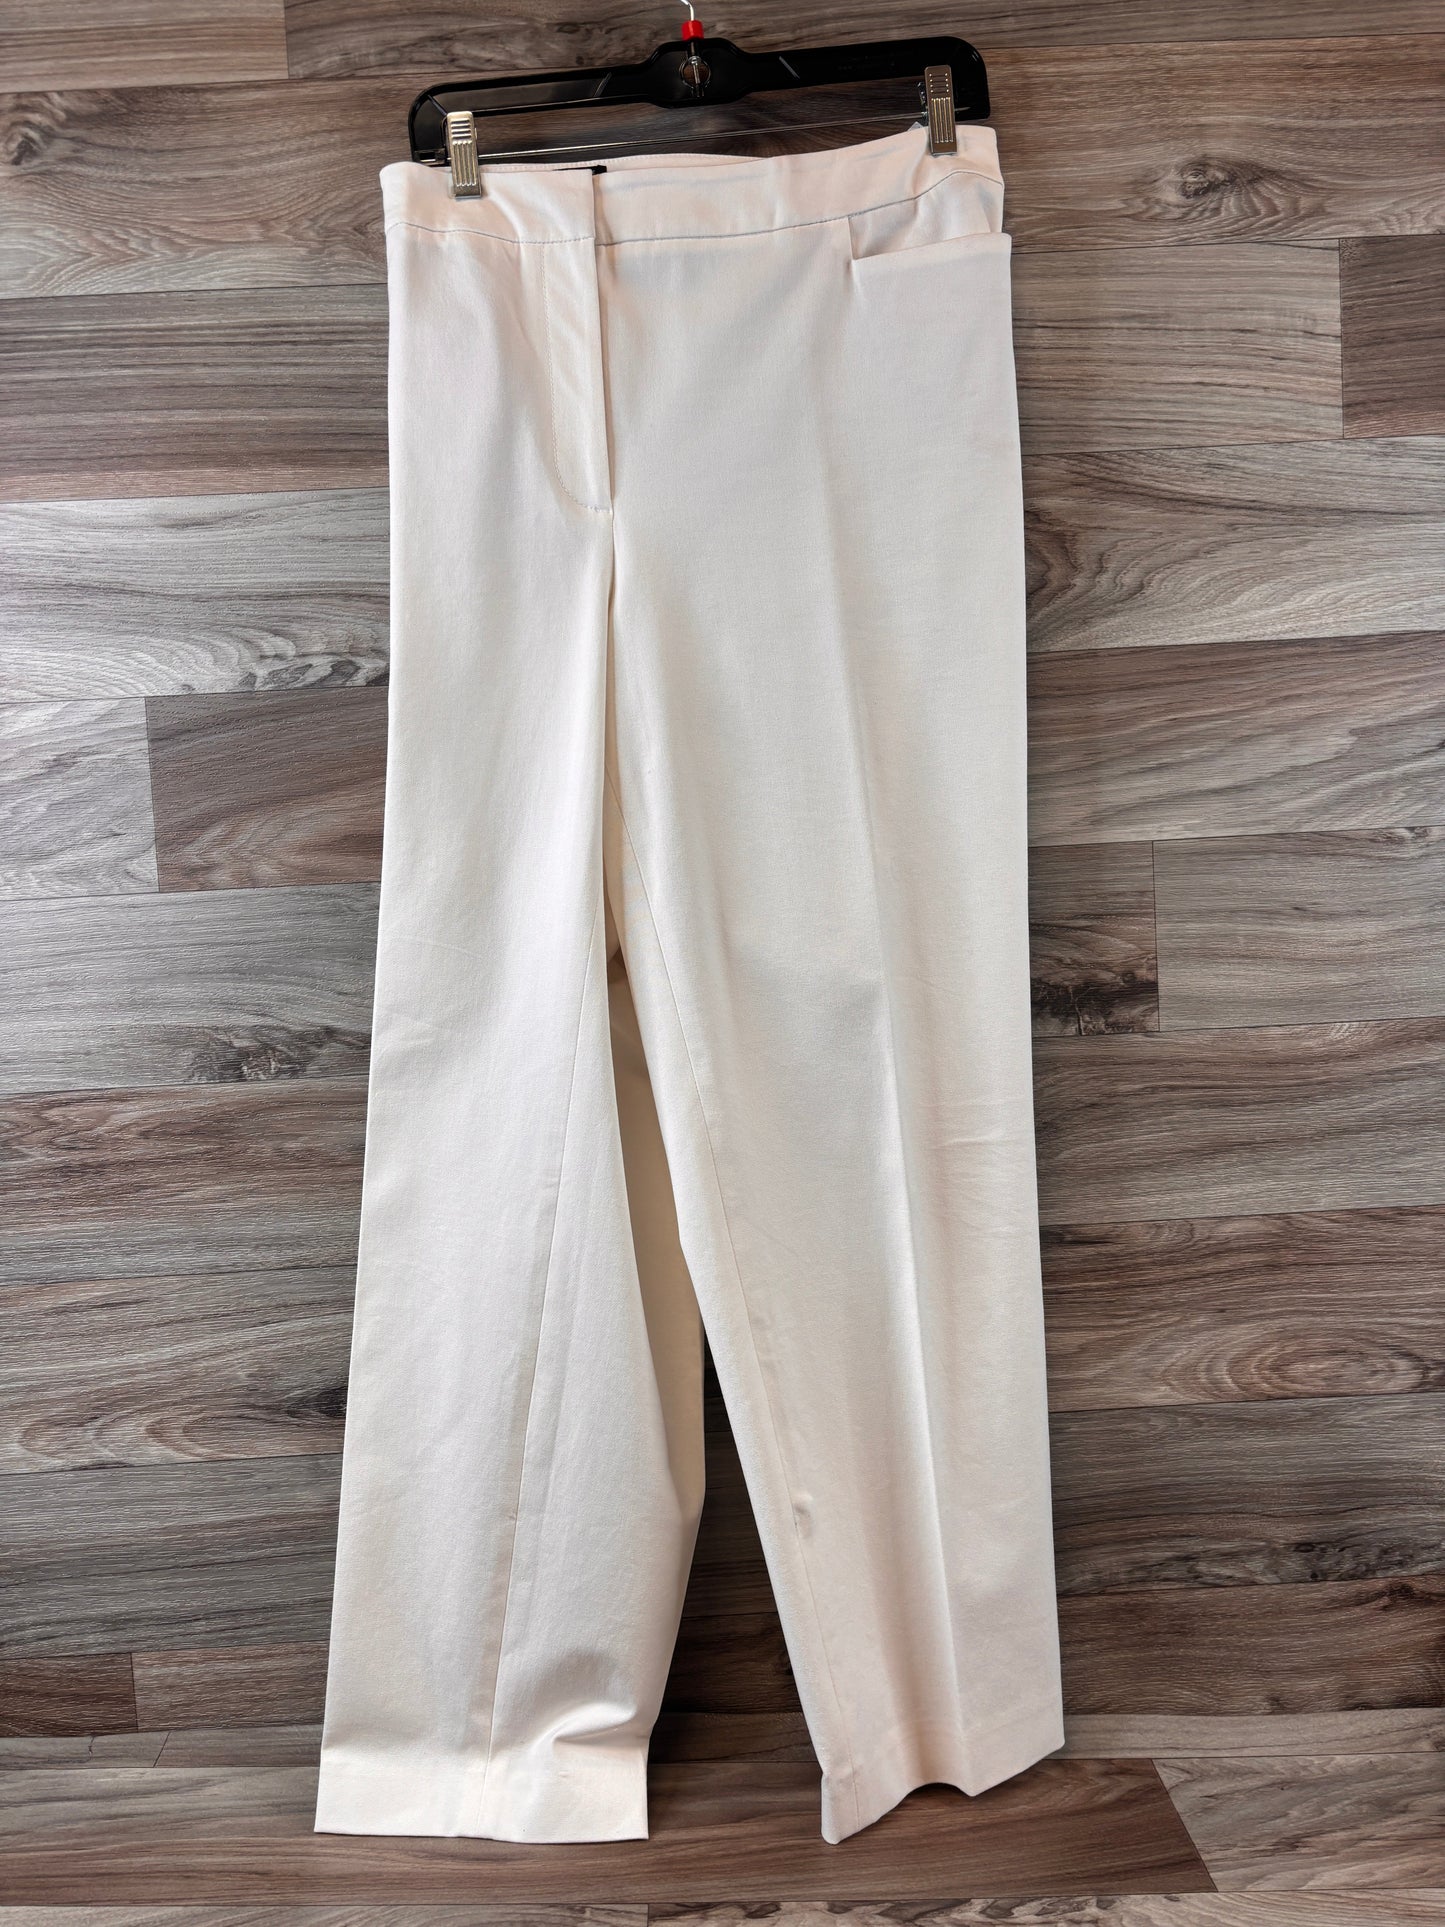 White Pants Dress Talbots, Size 18